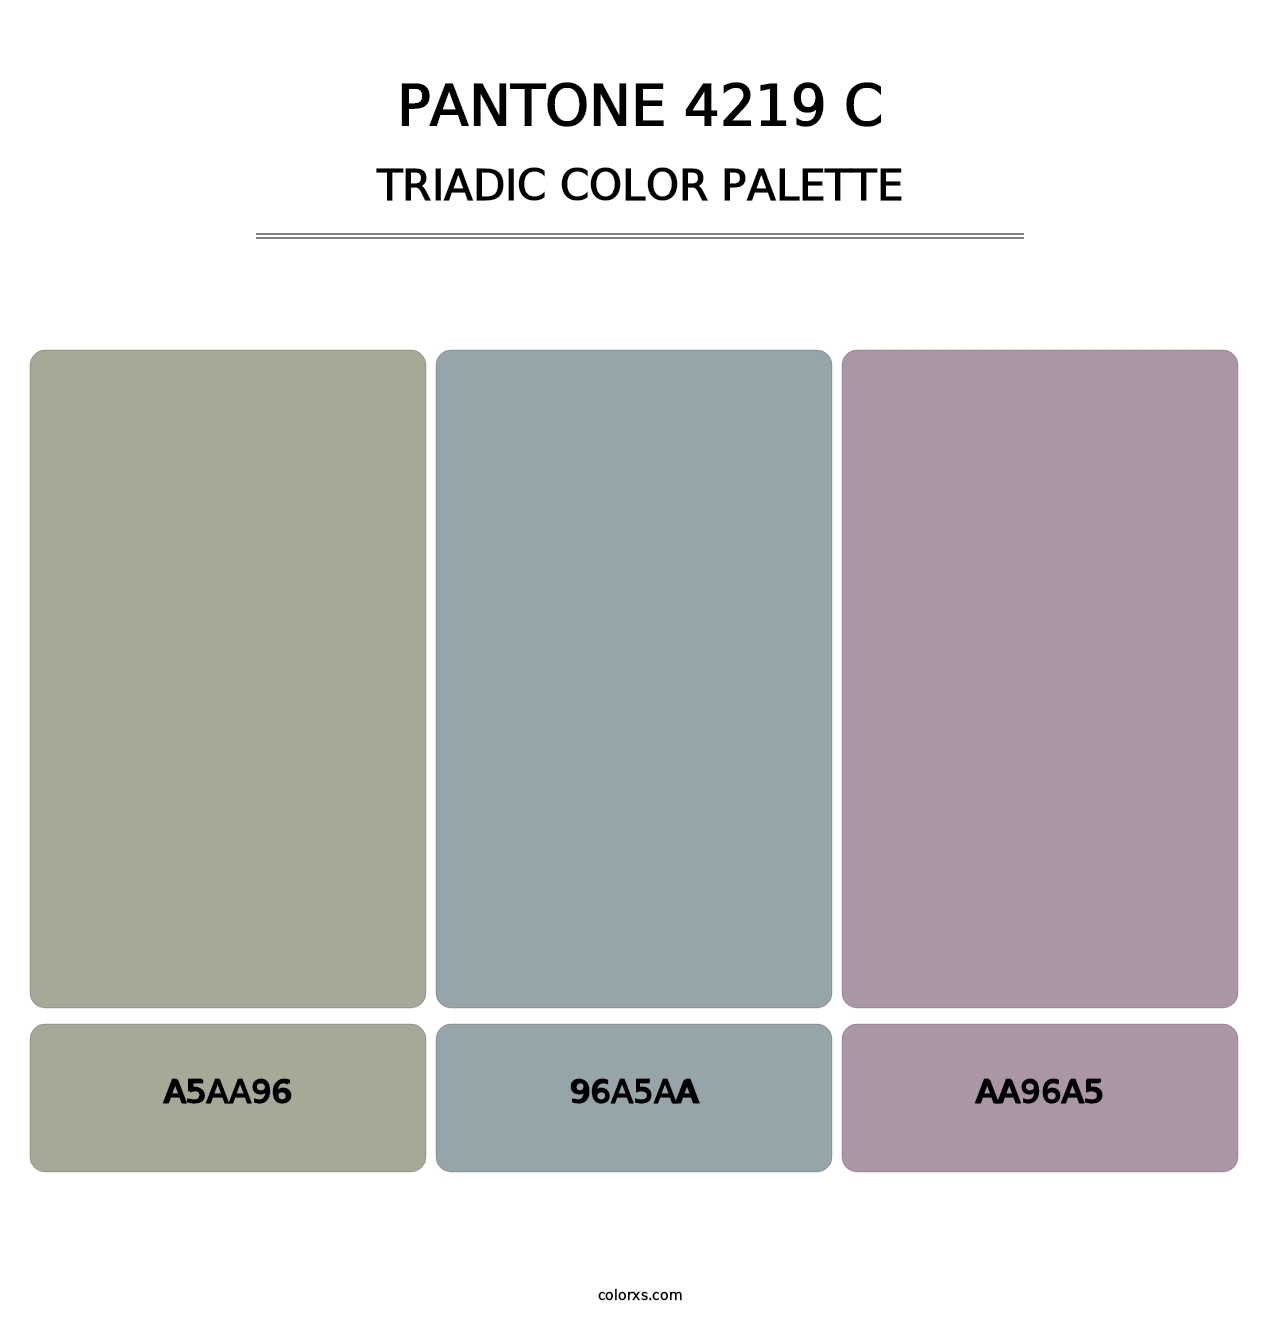 PANTONE 4219 C - Triadic Color Palette